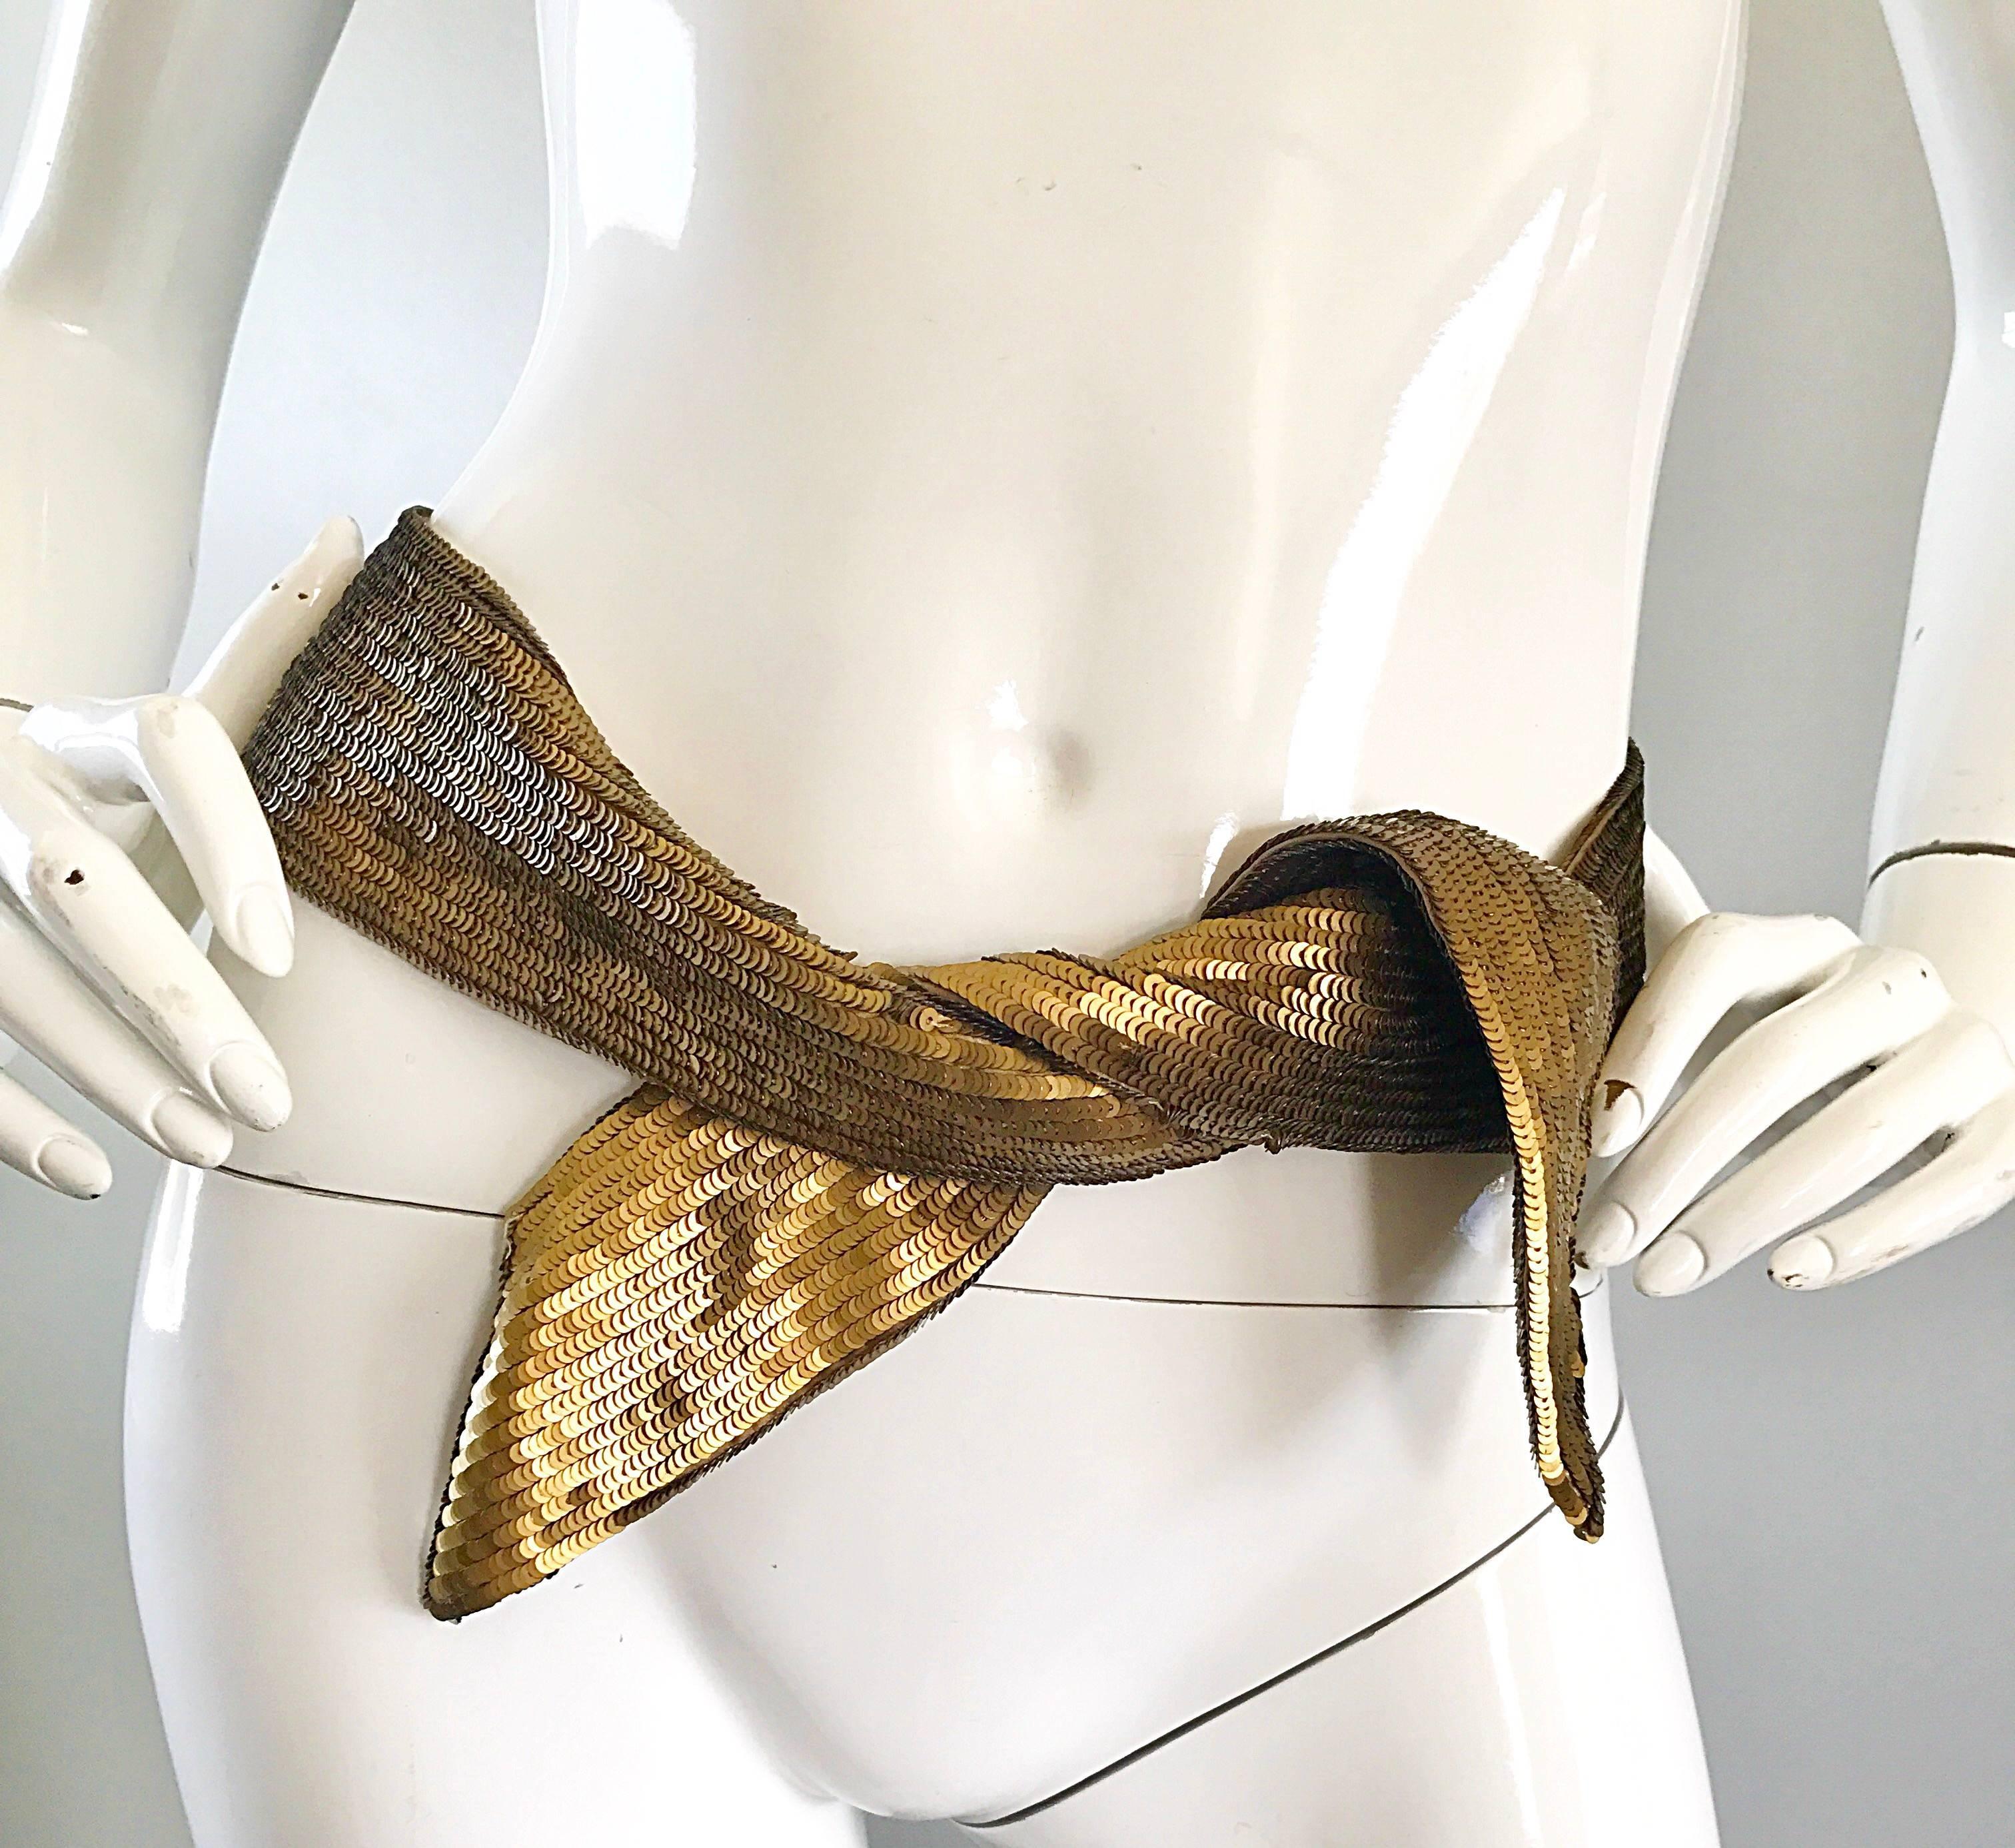 Neuf PROENZA SCHOULER golden bronze sequin sash belt ! Des milliers de paillettes sont cousues à la main sur le devant et le dos de la ceinture. Pièce extrêmement polyvalente qui peut vraiment ajouter une touche spéciale à n'importe quelle tenue. Il